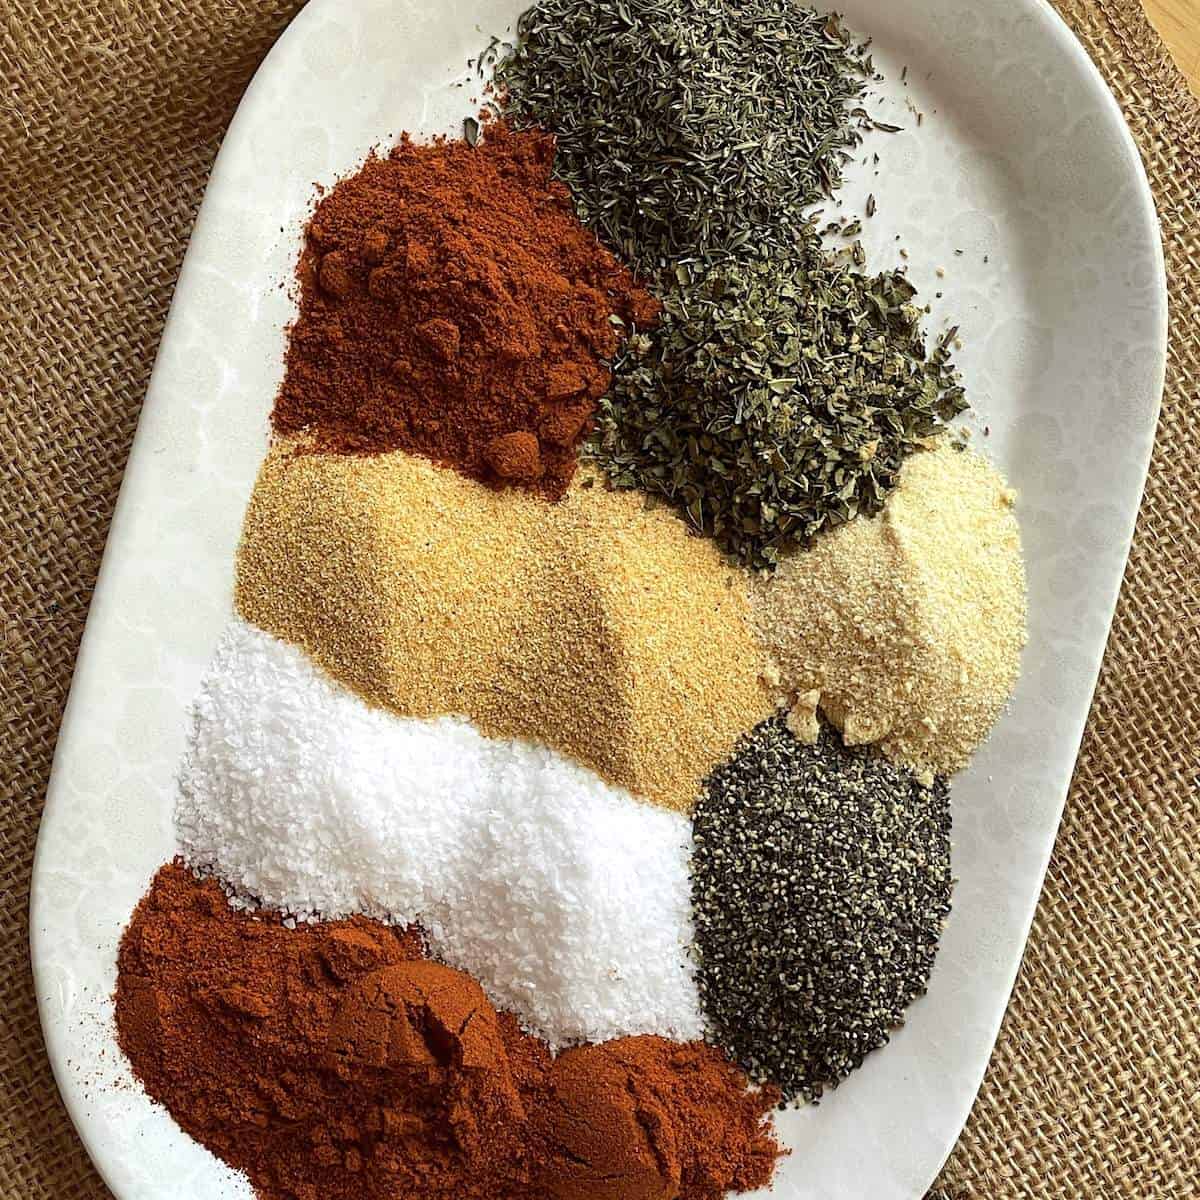 Cajun Spice Mix Recipe